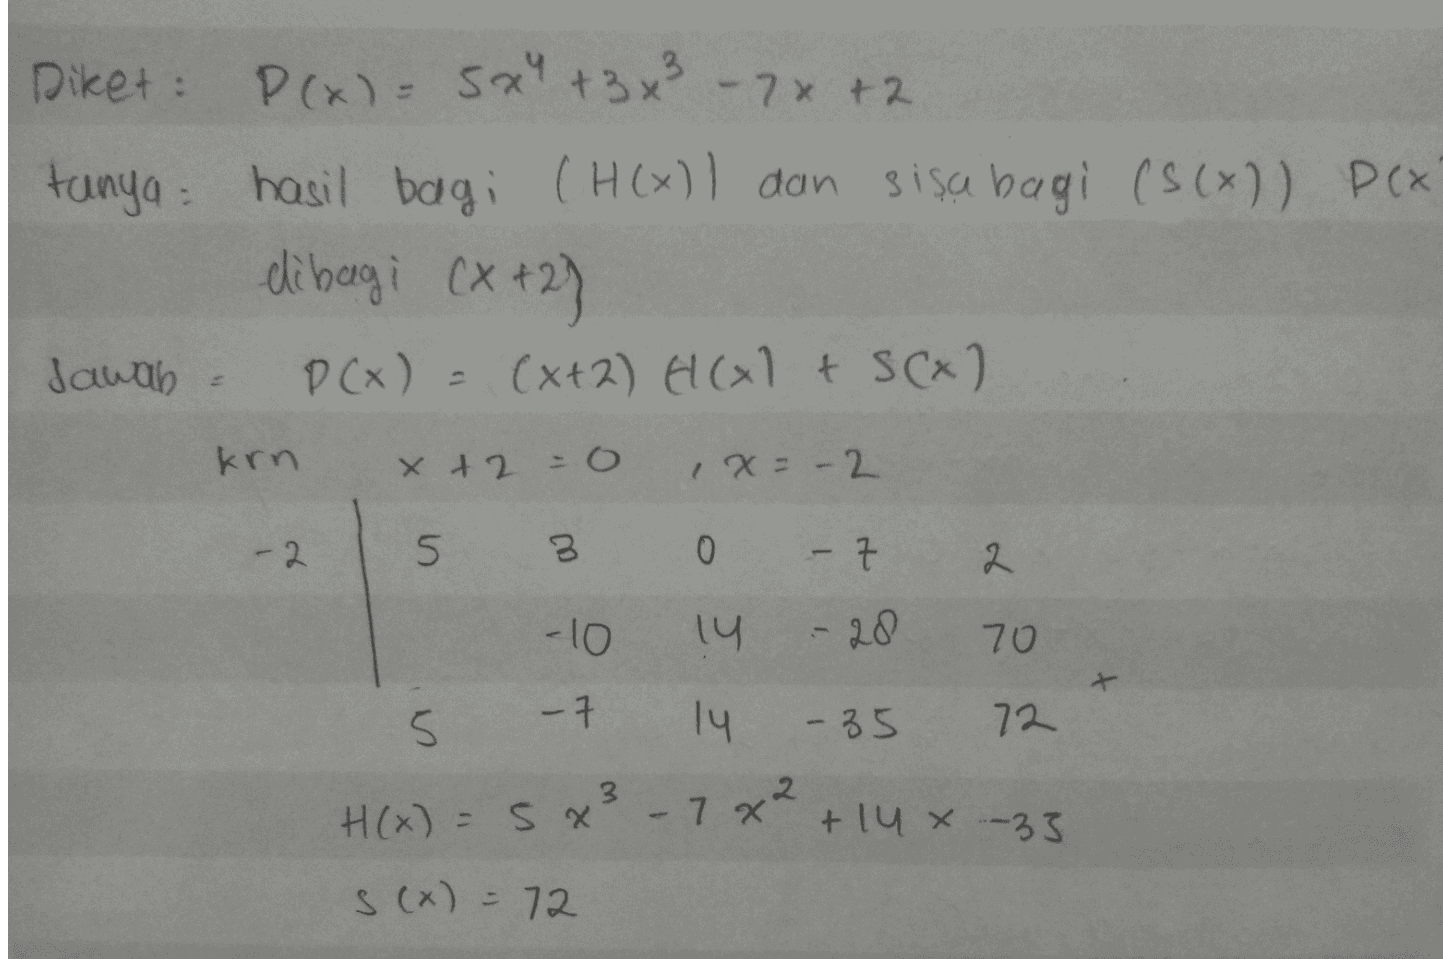 Diket: P(x) = 5x + 3 x² - 7x + 2 tanya hasil bagi (H() I dan sisa bagi (s(x)) Pix dibagi (x+2) Jawab P(x) (x+2) ECG 1 + S(x) krn x + 2 =0, x= -2 -2 5 3 0 - Z 2 -10 14 - 20 70 a -7 -35 72 14 H(x) = 5x3 - 7x² +14 % -33 s(x) = 72 